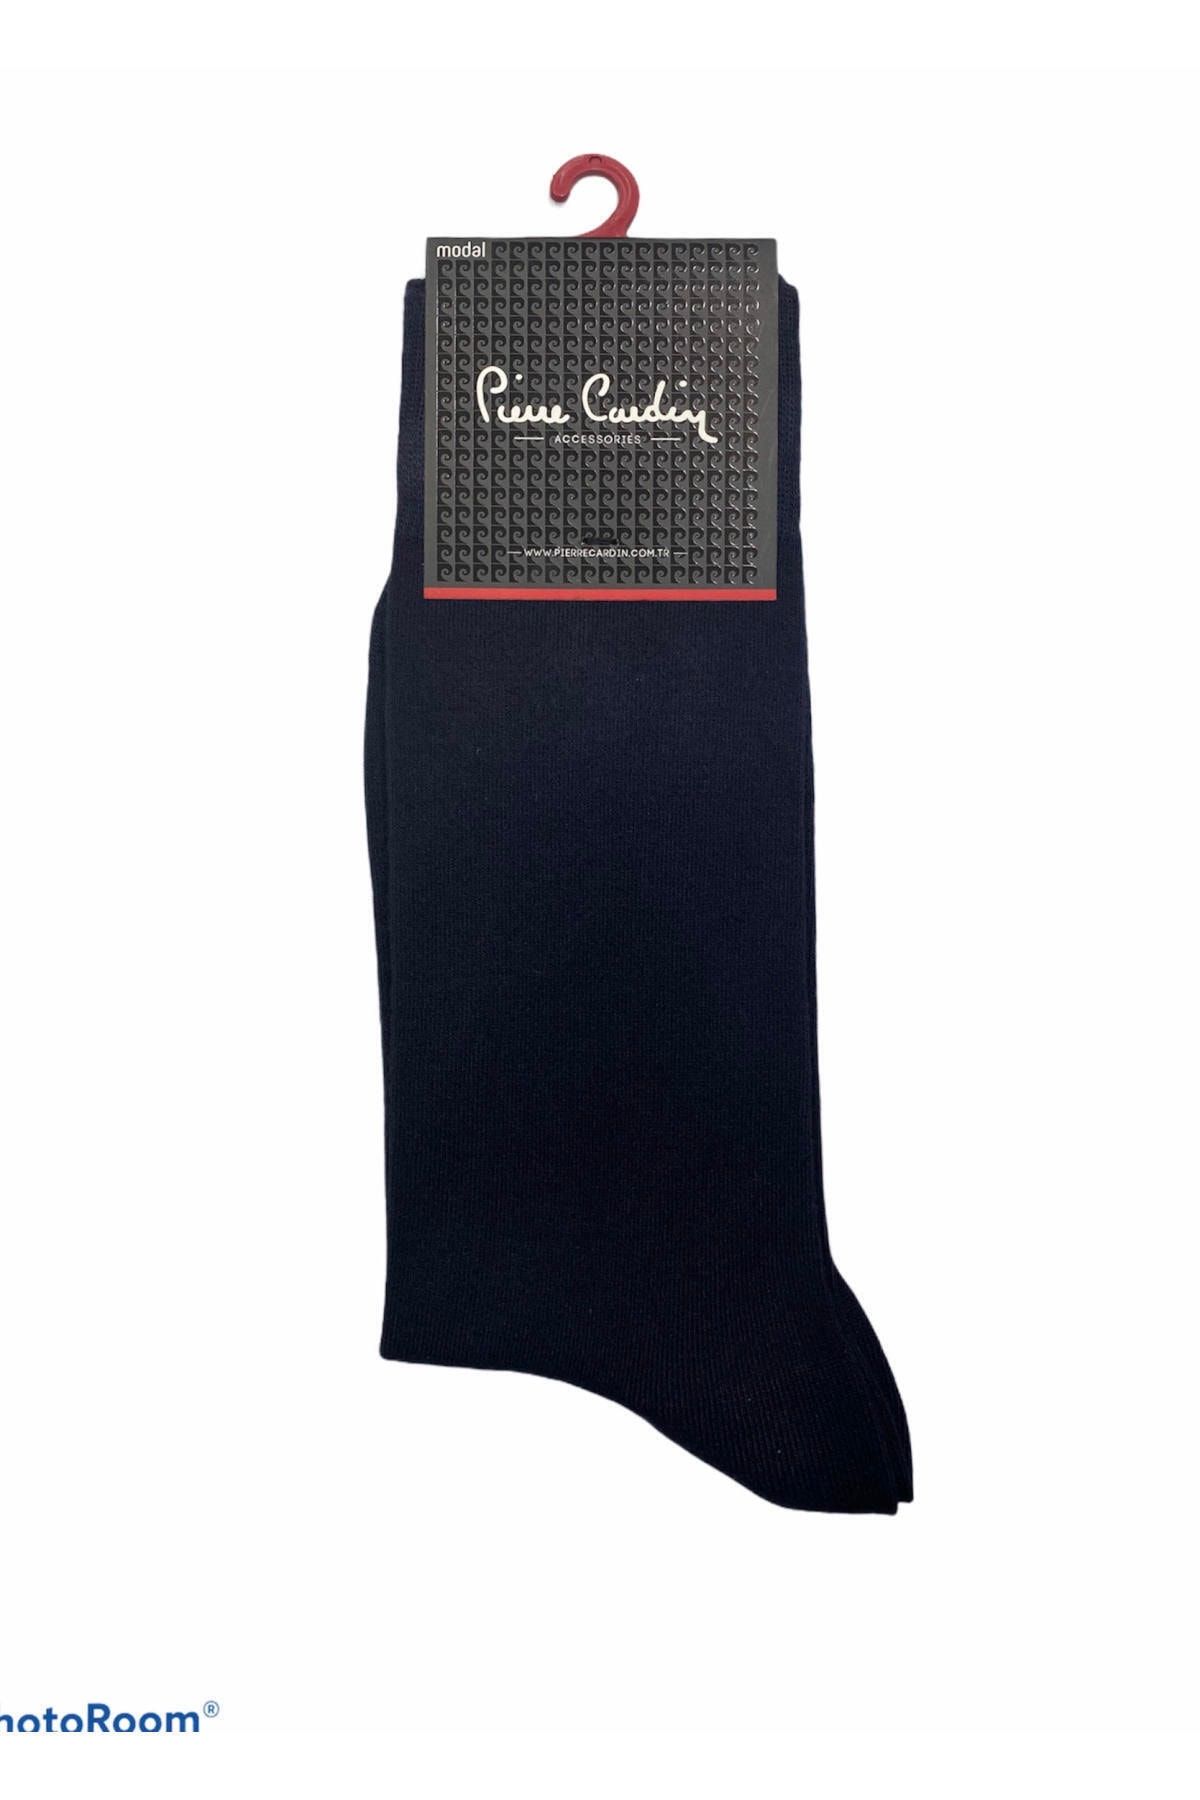 Pierre Cardin Modal Pamuk Çorap 6lı Paket